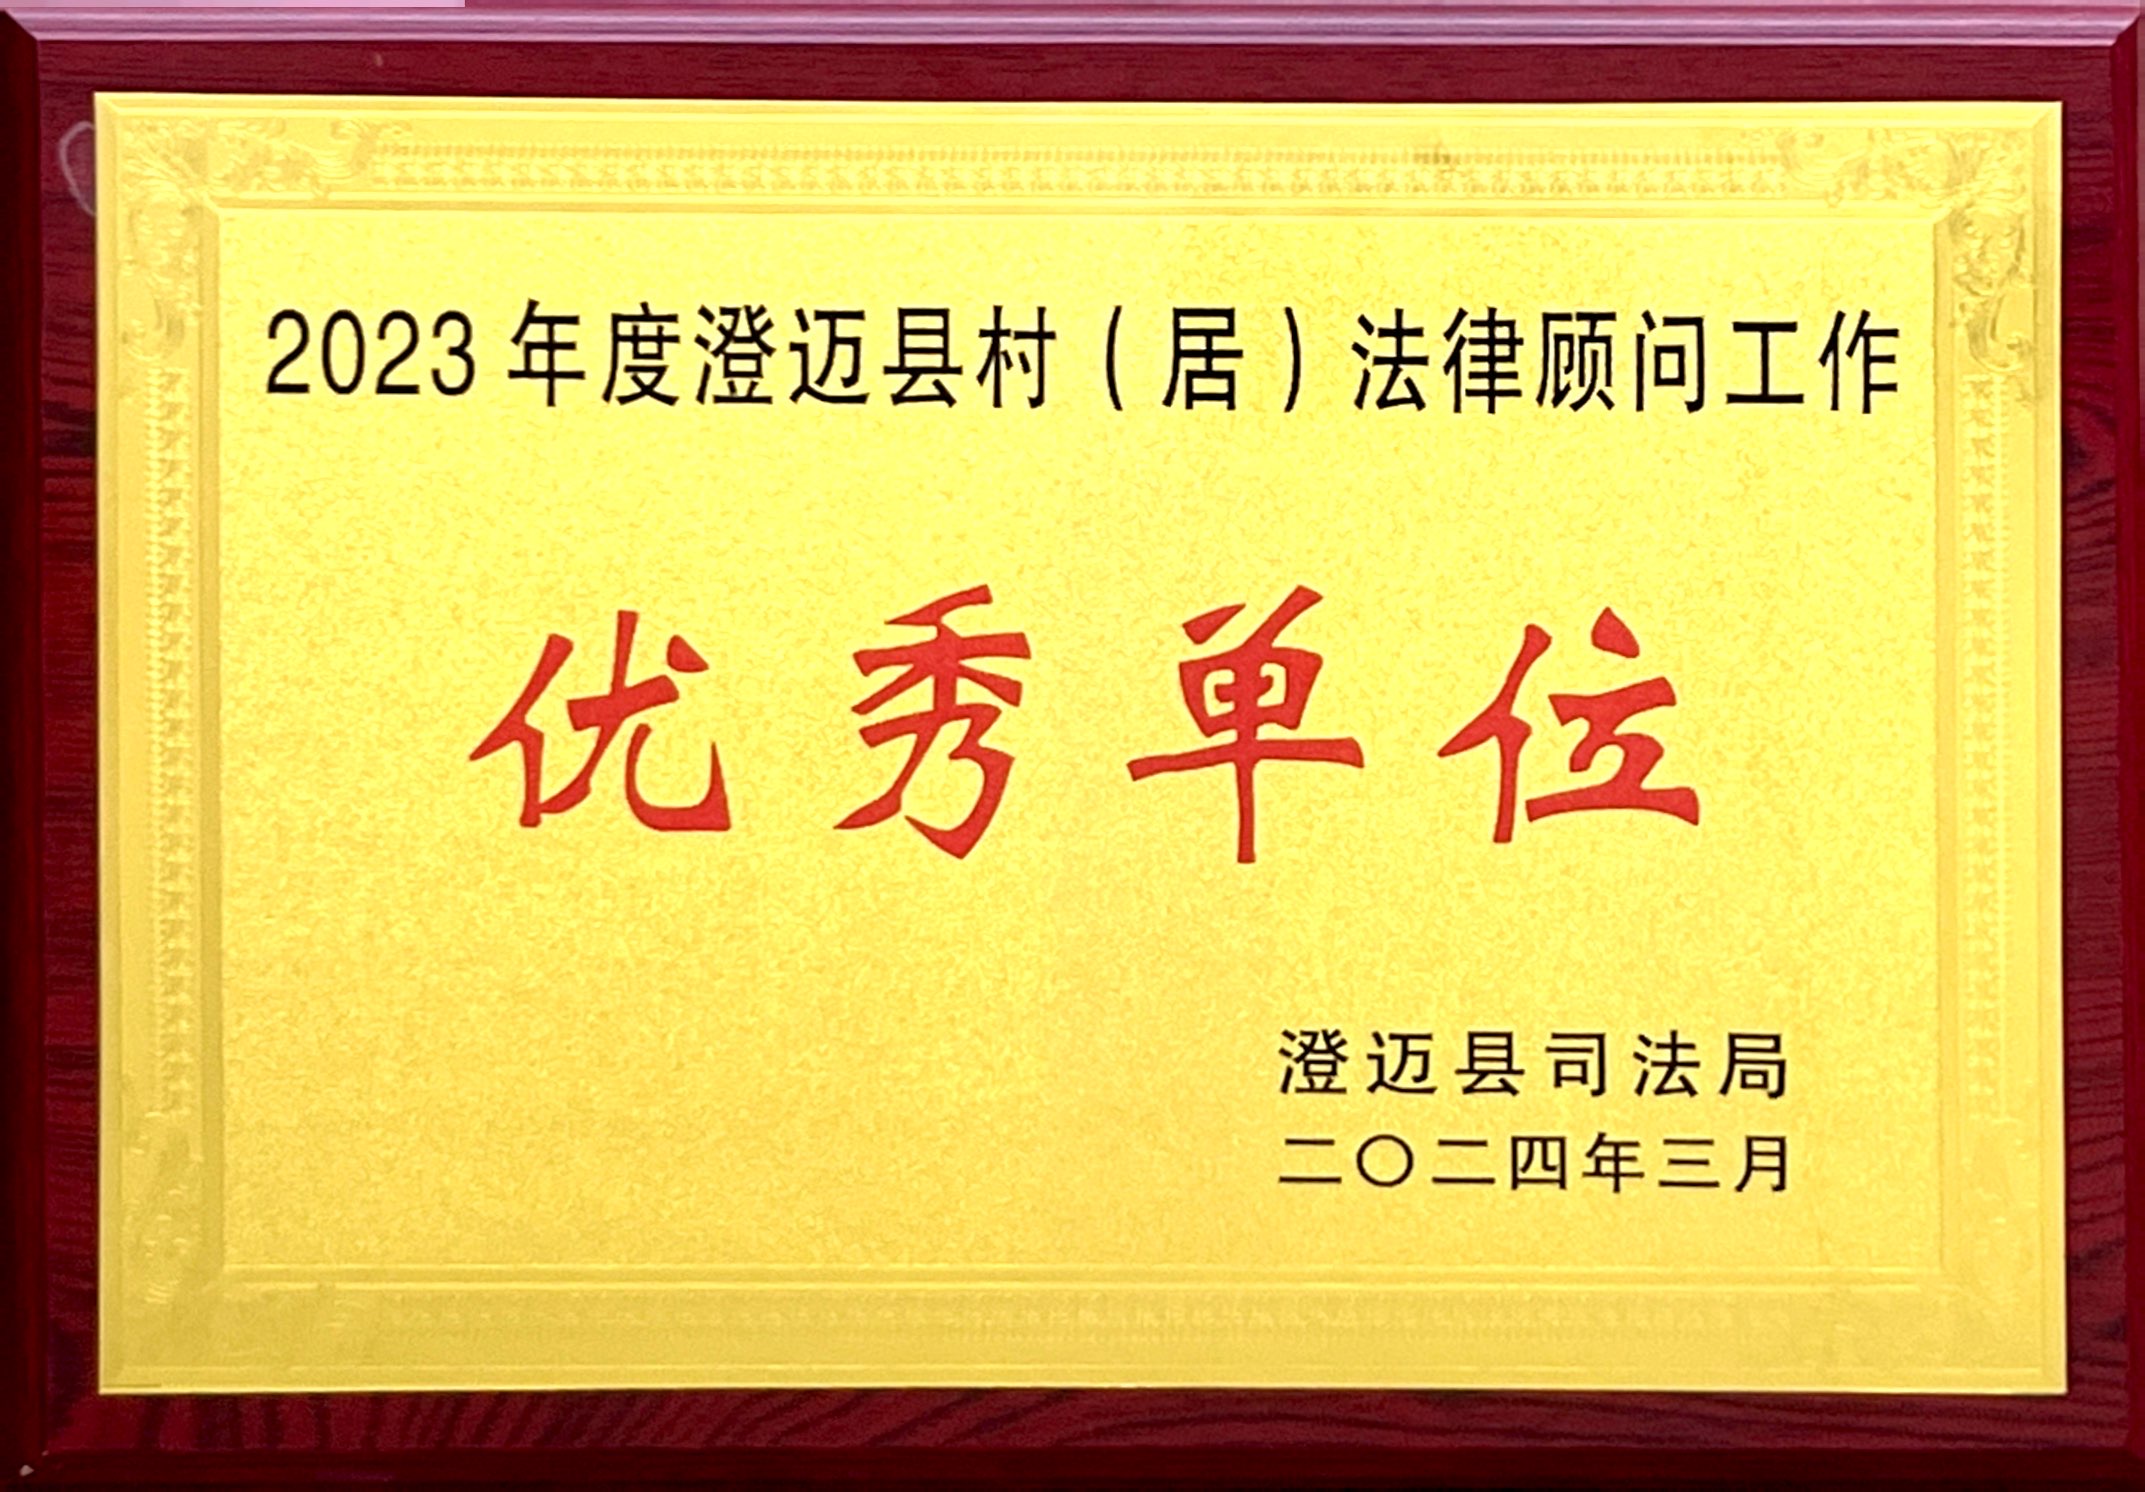 2023年度荣获澄迈县村居法律顾问优秀单位